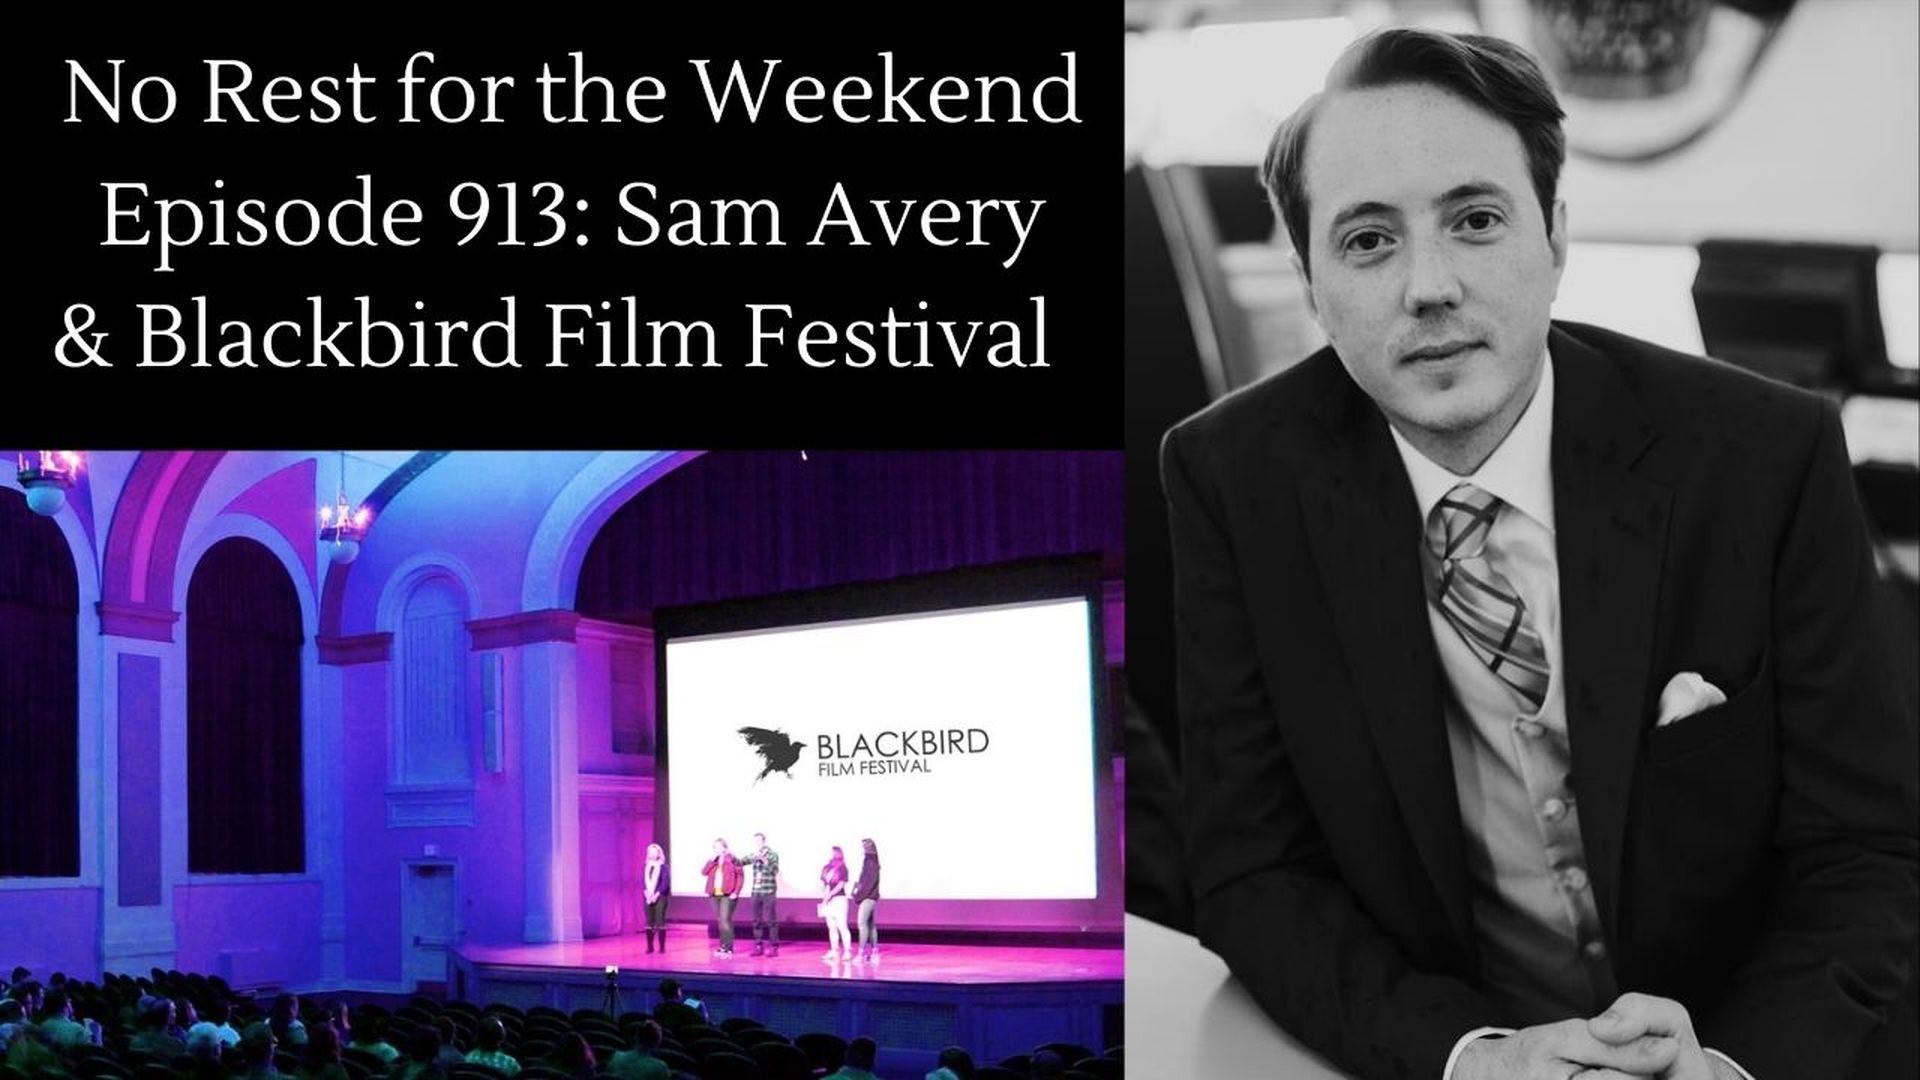 Episode 913: Sam Avery & Blackbird Film Festival